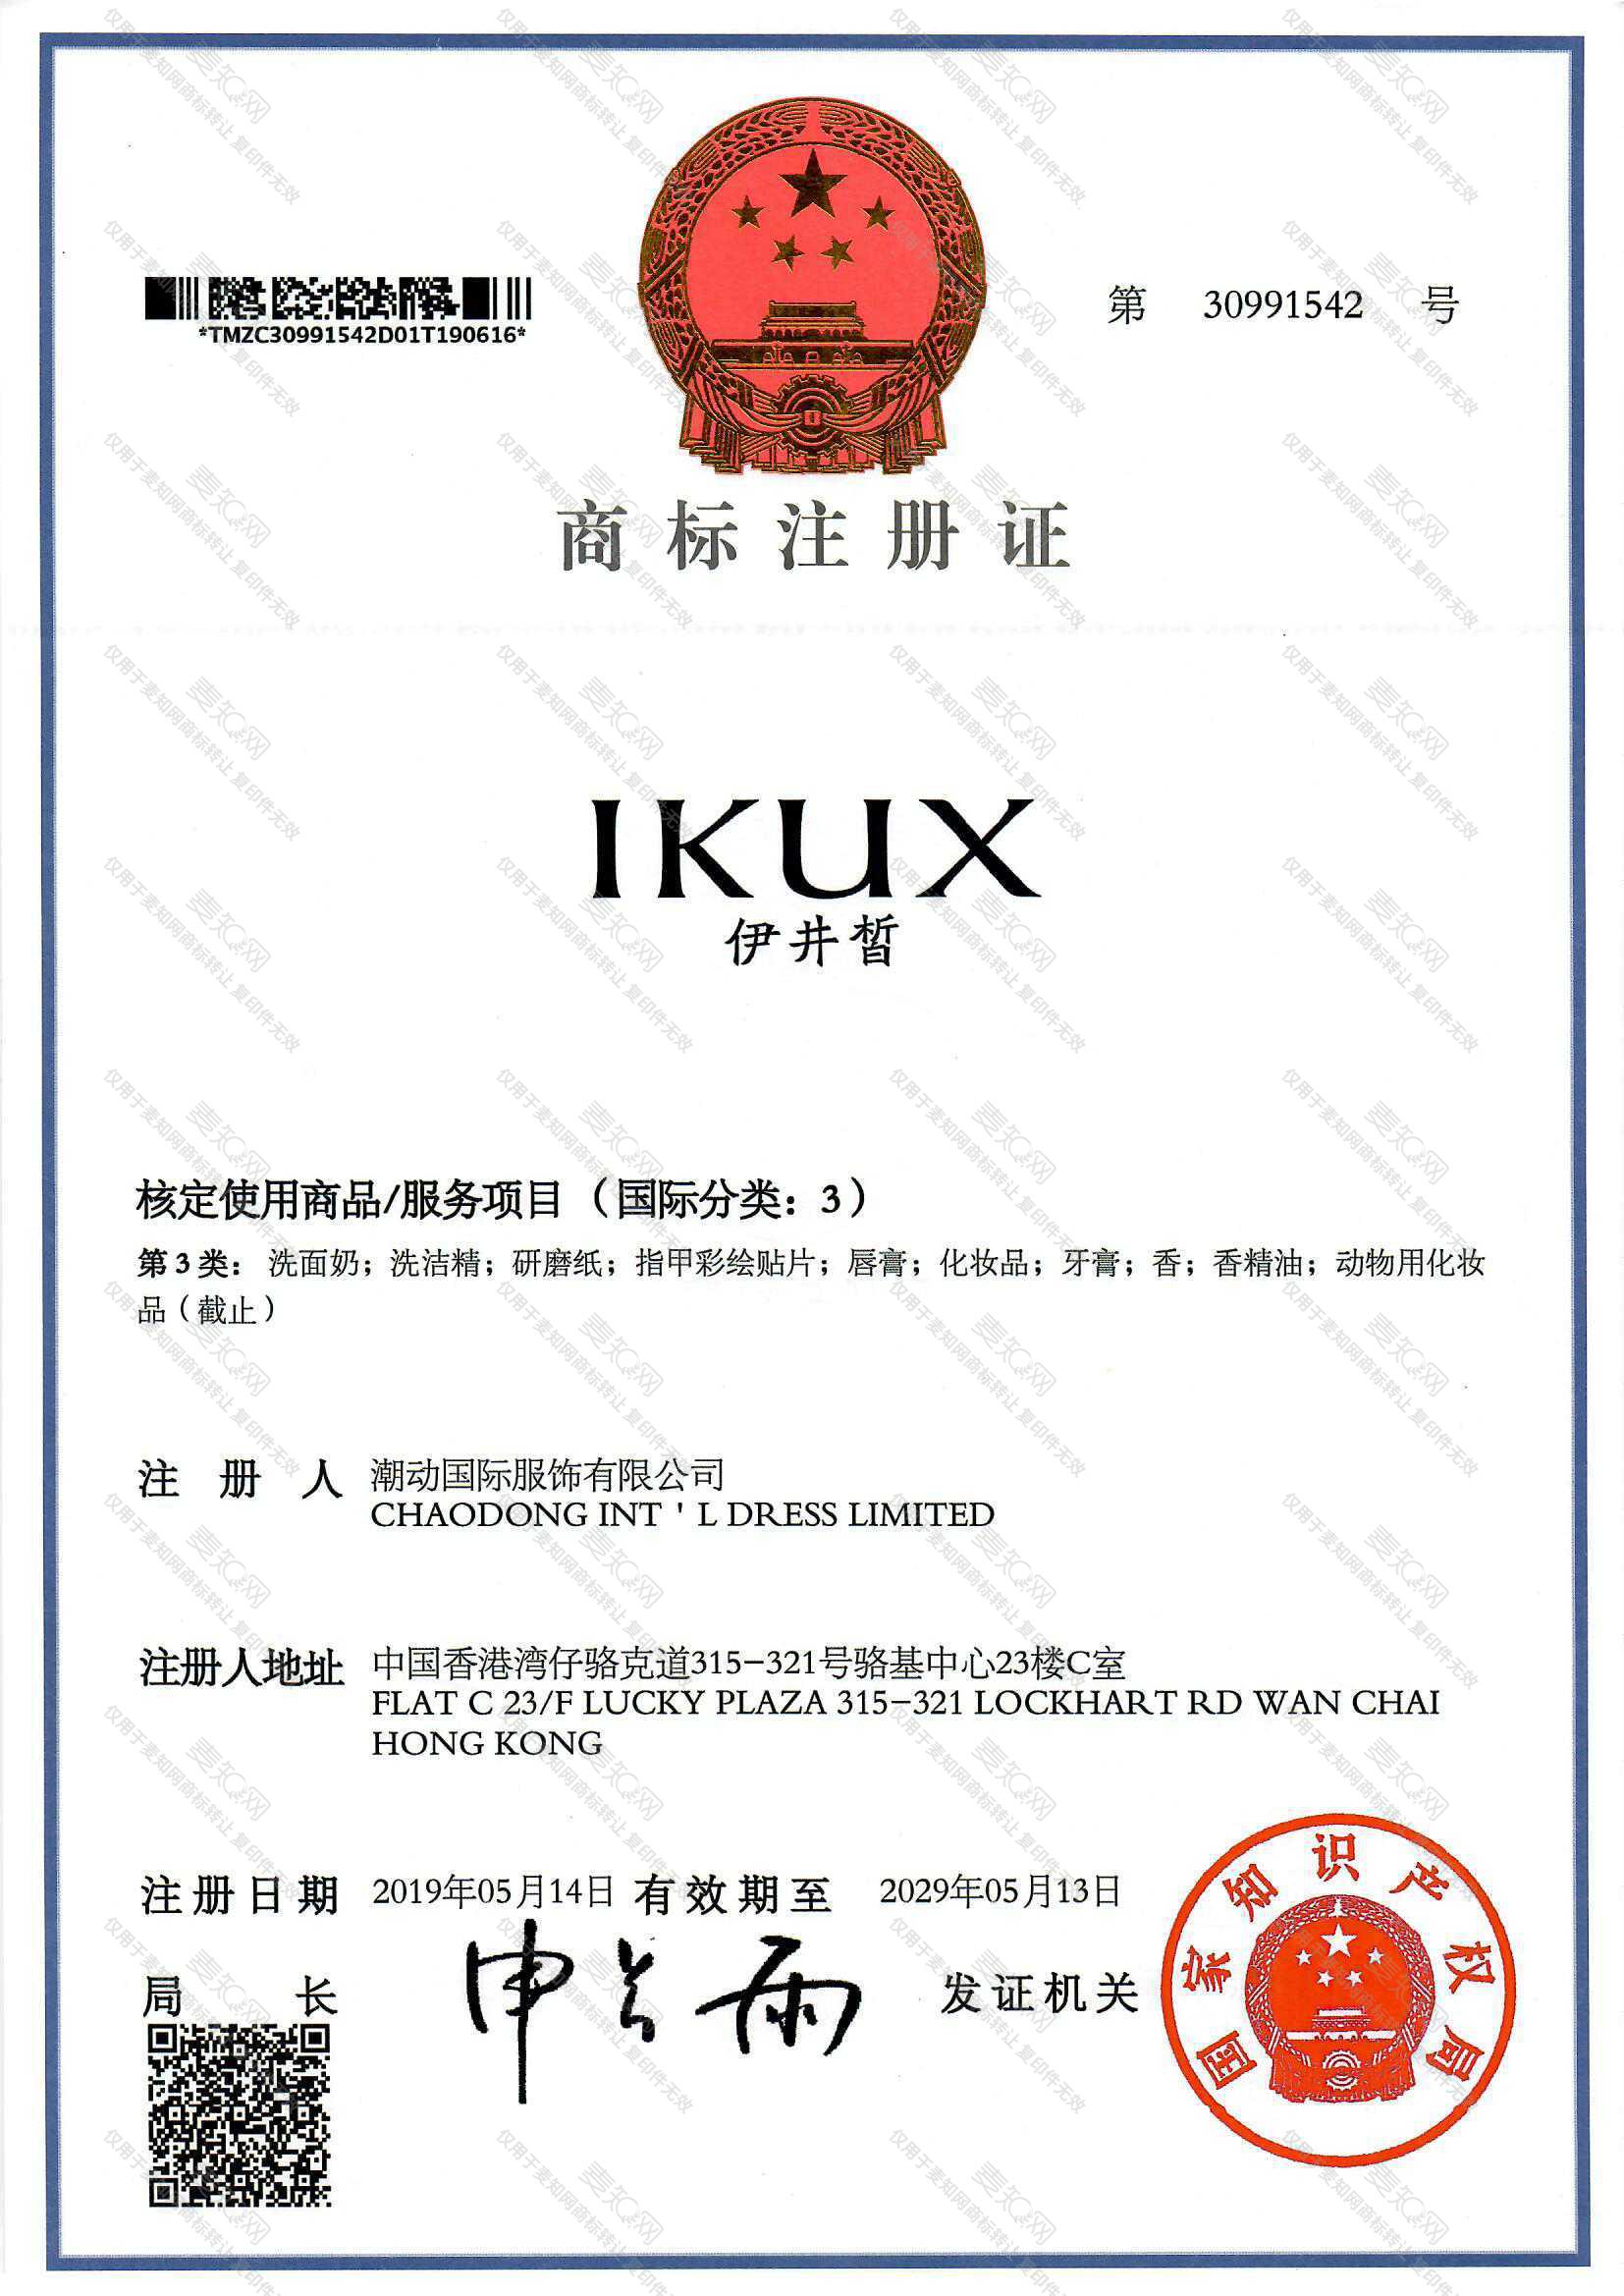 伊井皙 IKUX注册证